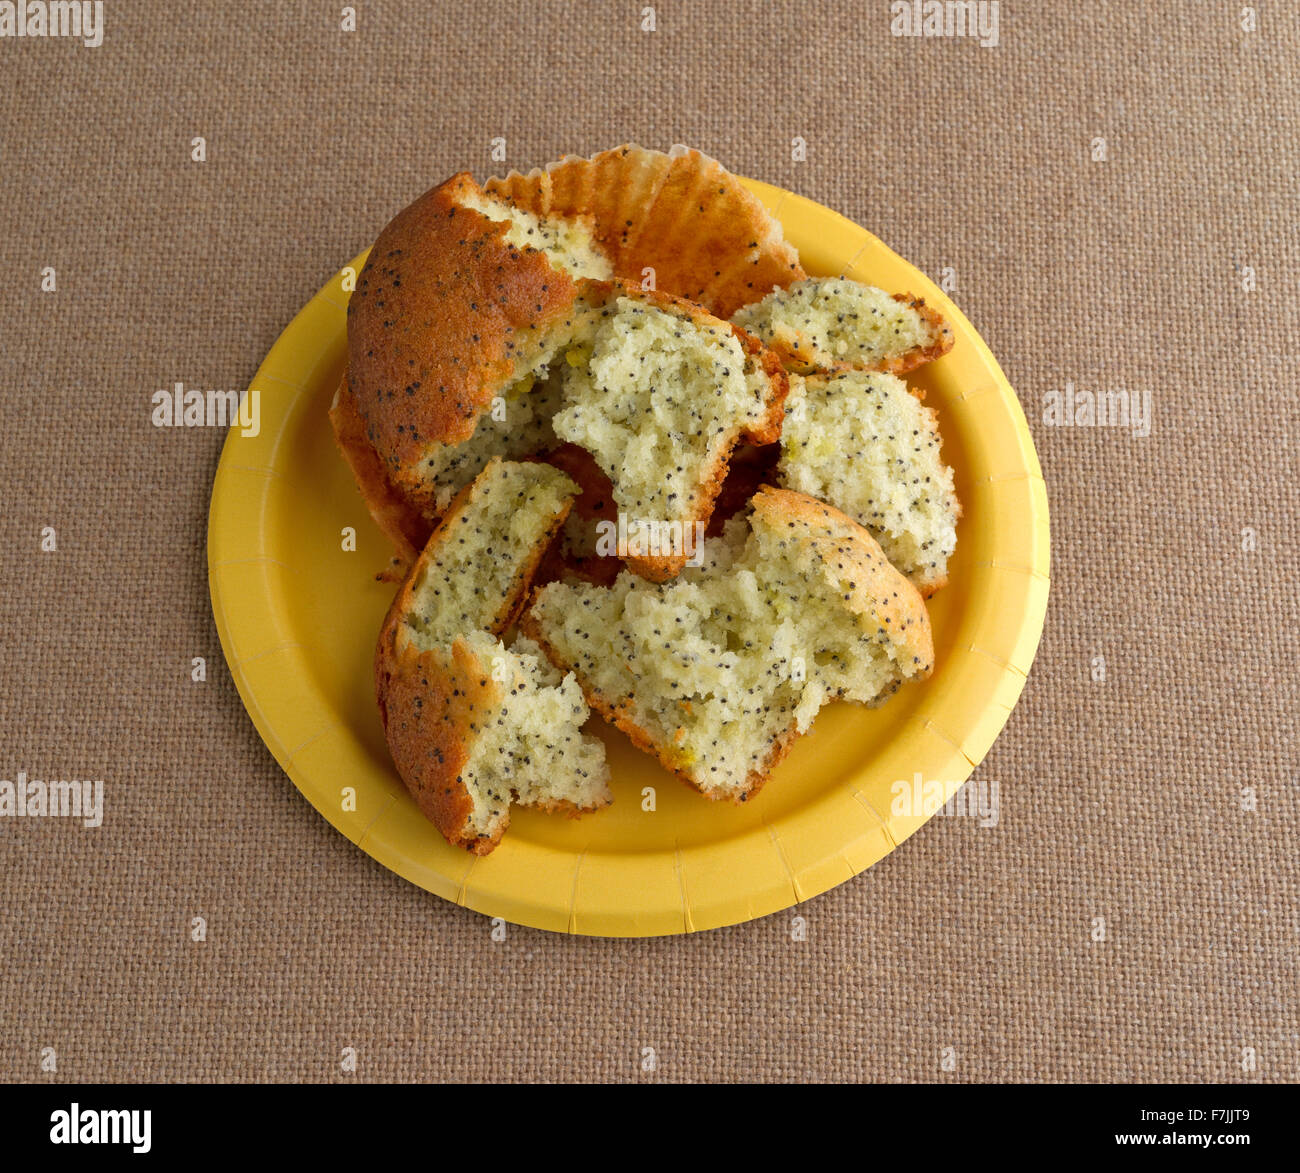 Un pane appena sfornato di pepe al limone muffin prima colazione che è stato rotto in più pezzi su una piastra di colore giallo sulla cima di una tovaglia di tela Foto Stock